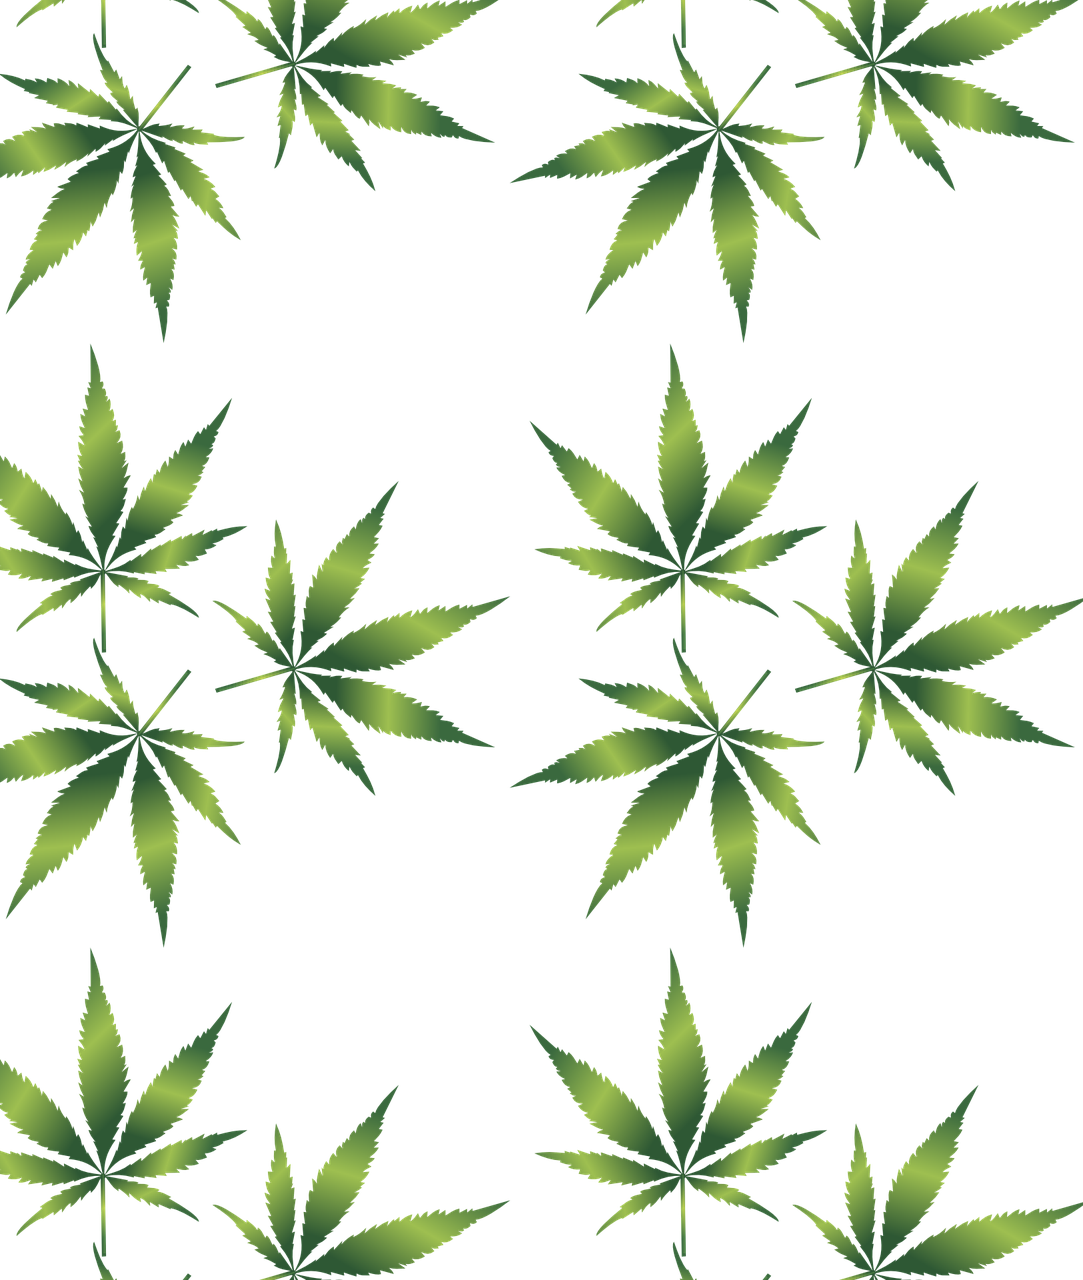 marijuana for anxiety